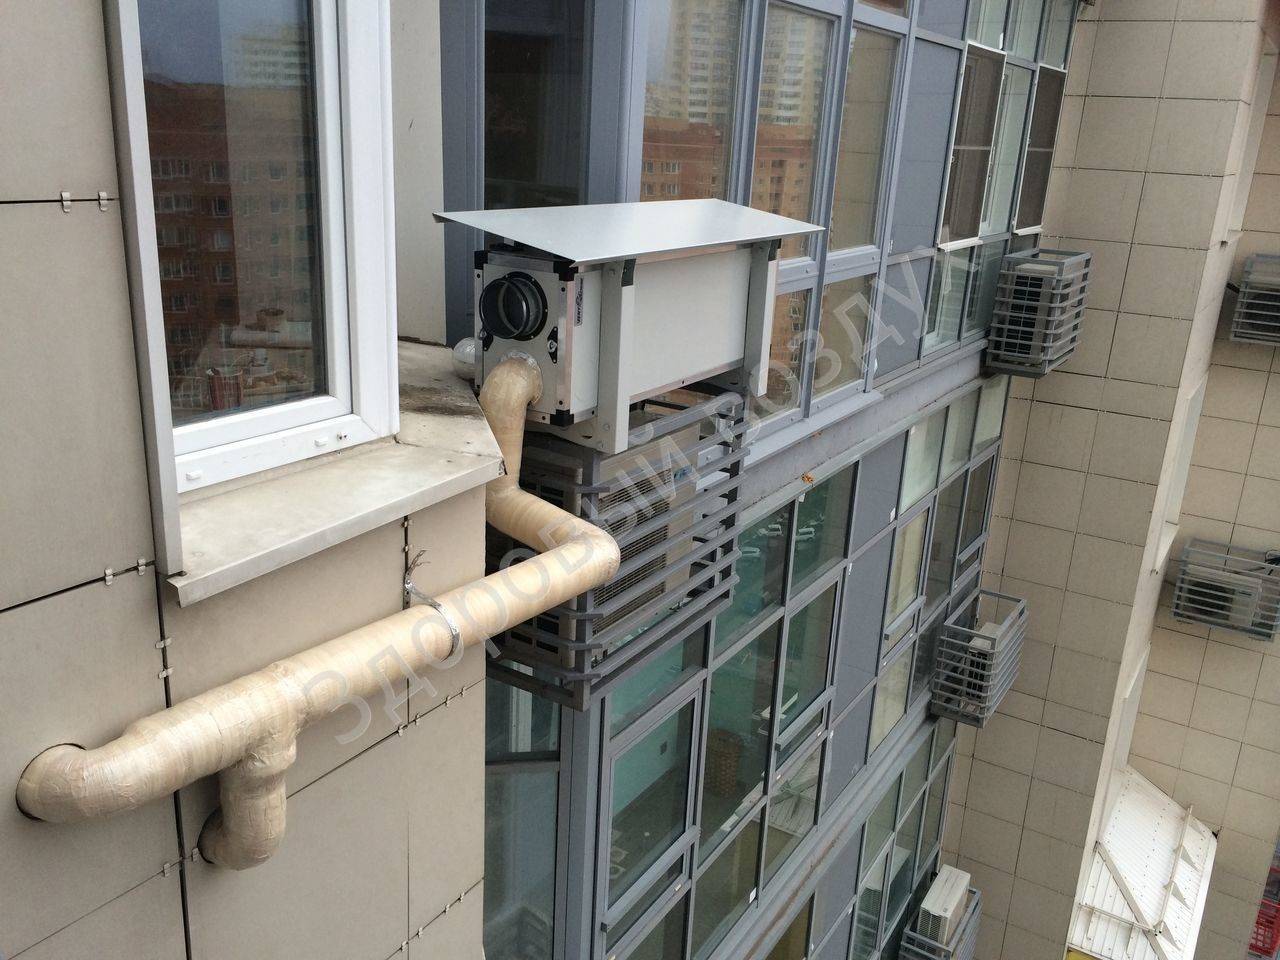 Чем опасна плохая вентиляция. причины неполадок в системе вентиляции и советы по их устранению - самстрой - строительство, дизайн, архитектура.